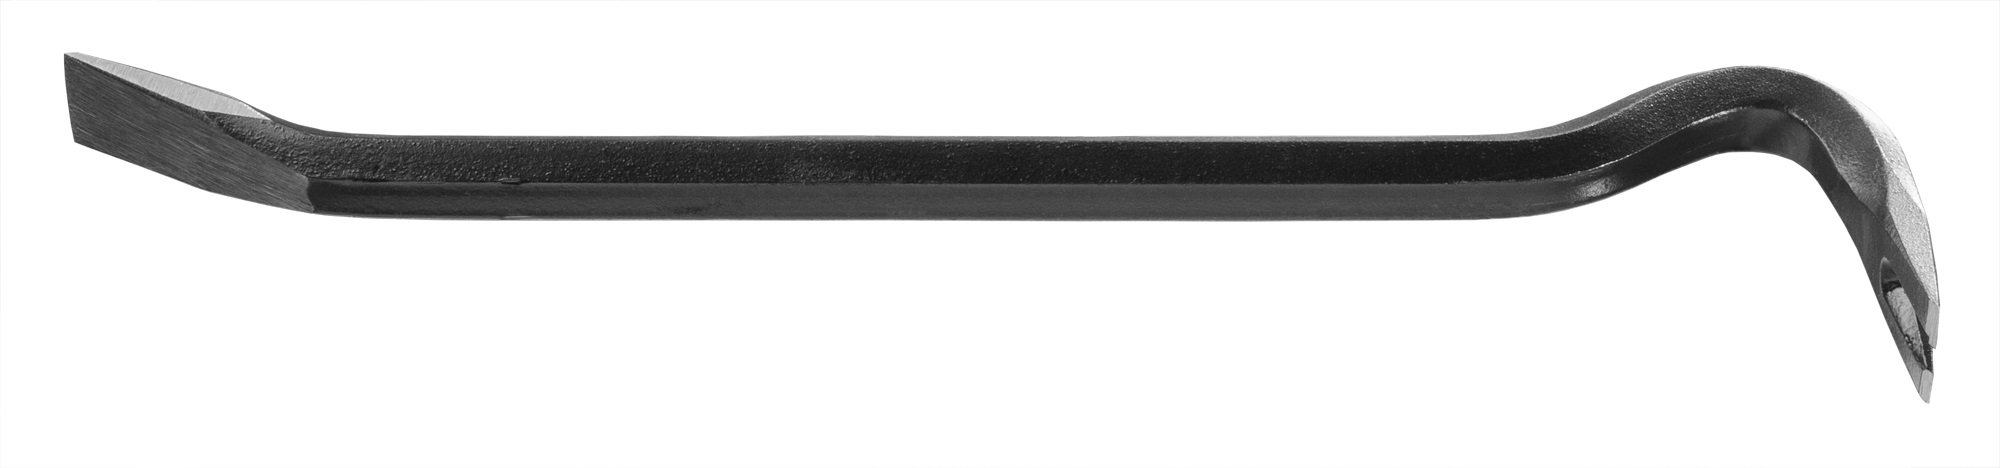 Ціна лом із гвоздодером Neo Tools 29-041 в Кропивницькому